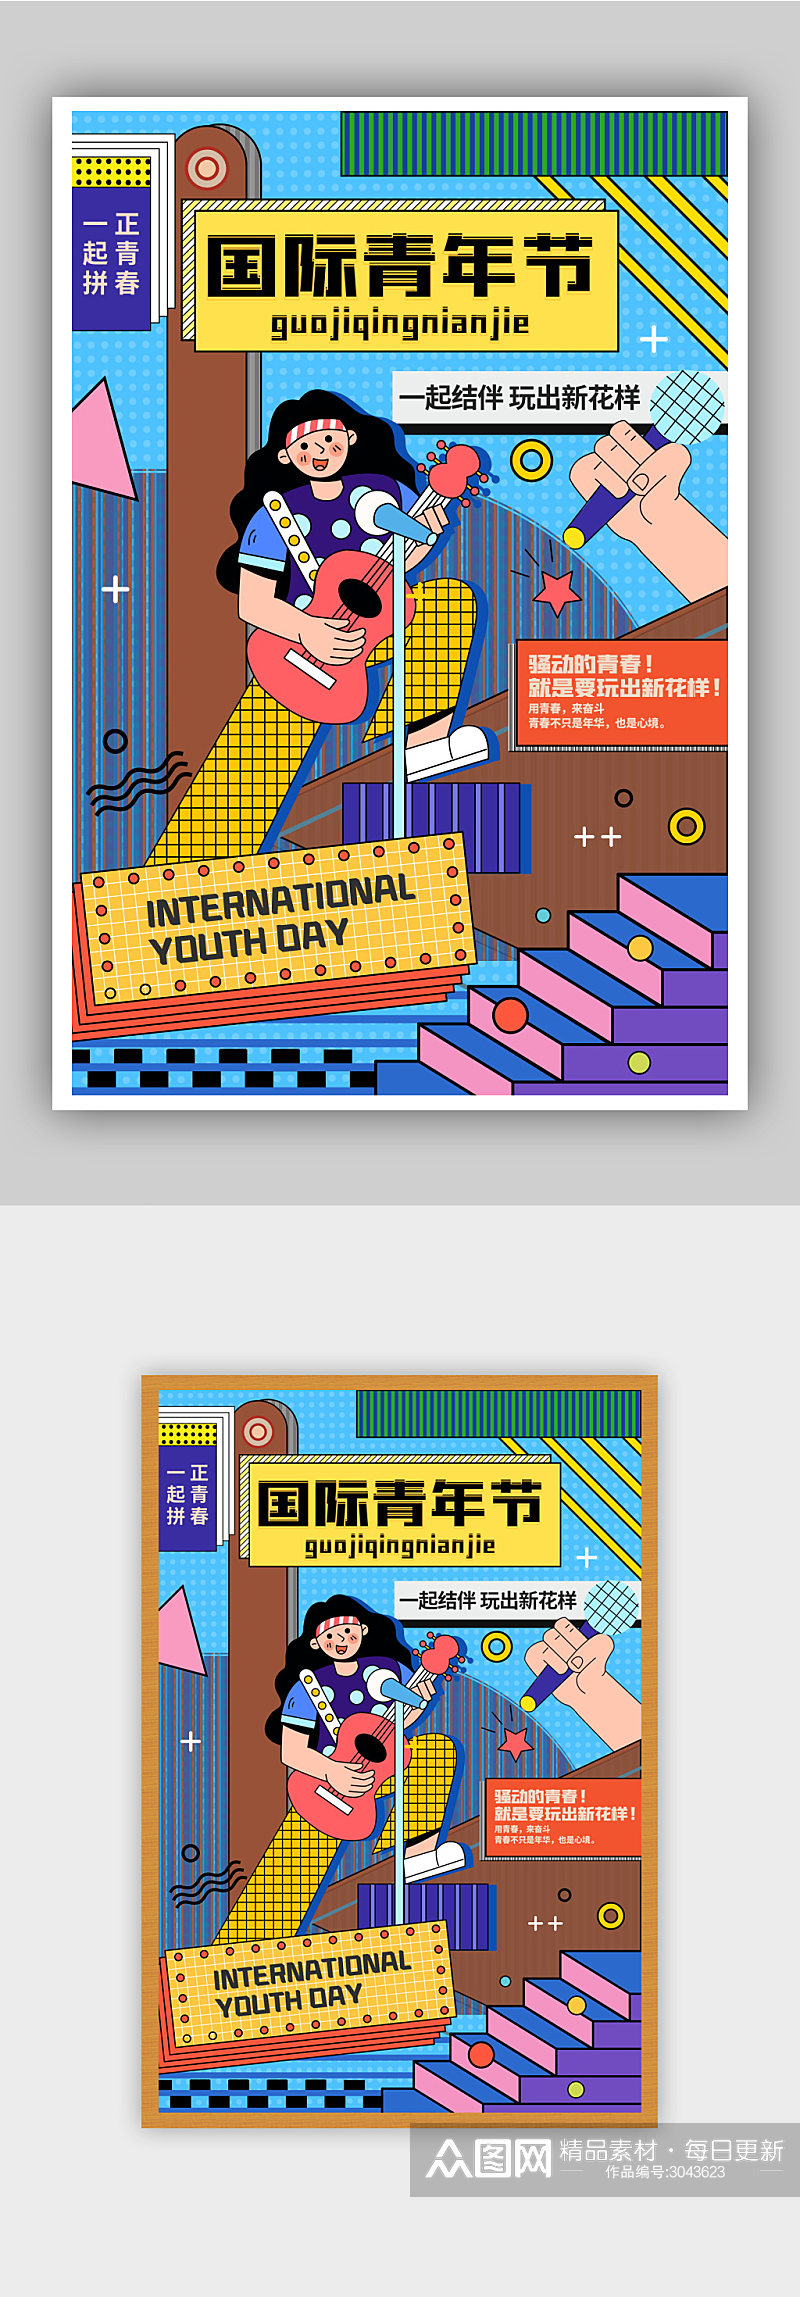 扁平化现代简约国际青年节宣传海报素材